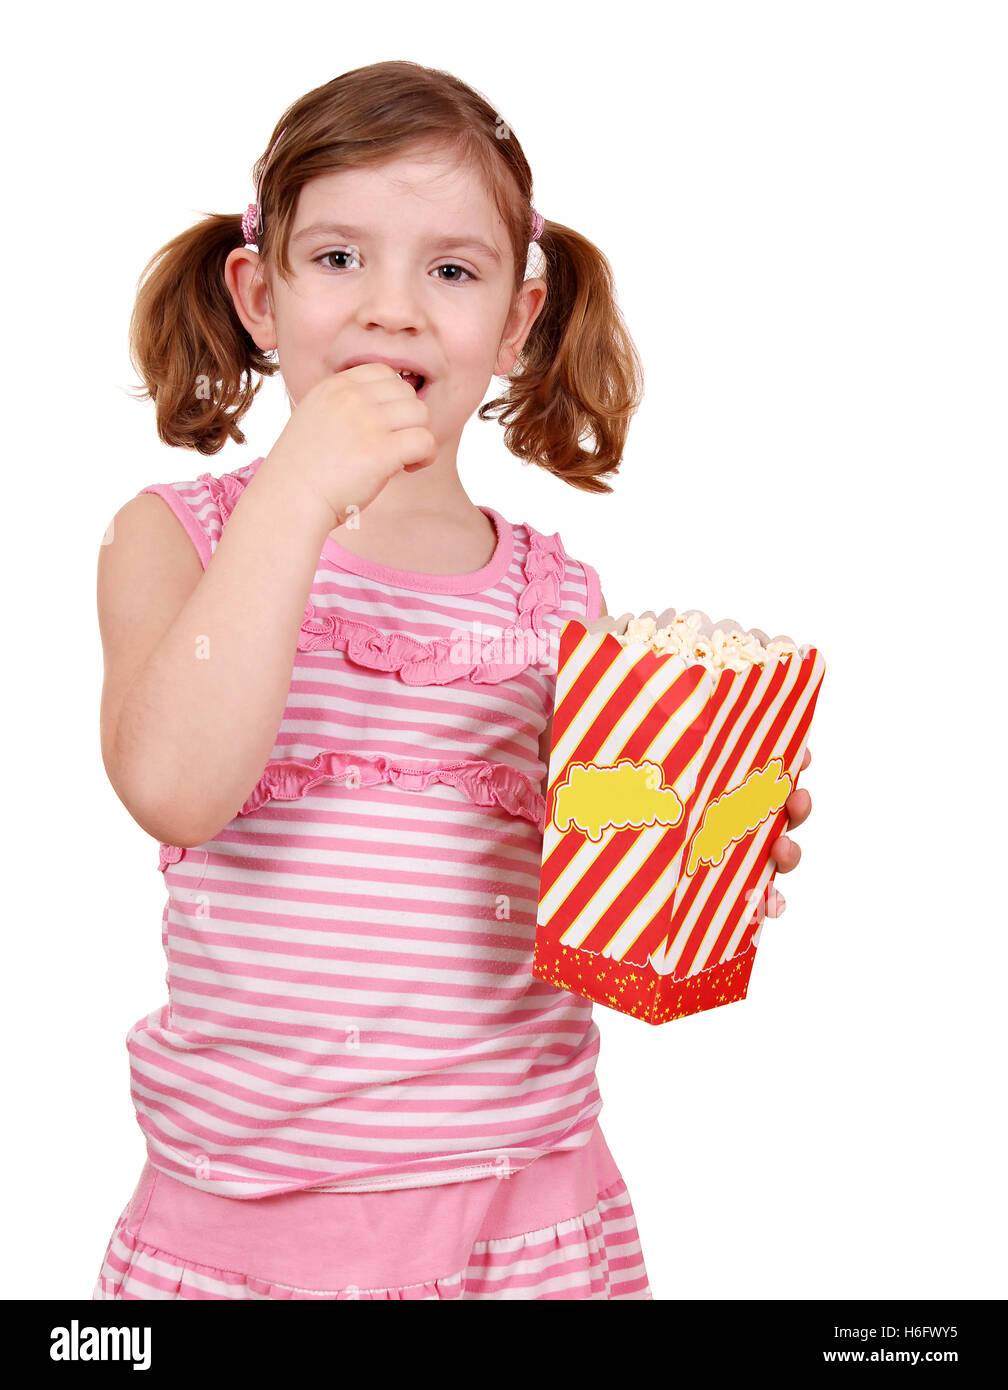 little girl eat popcorn on white Stock Photo